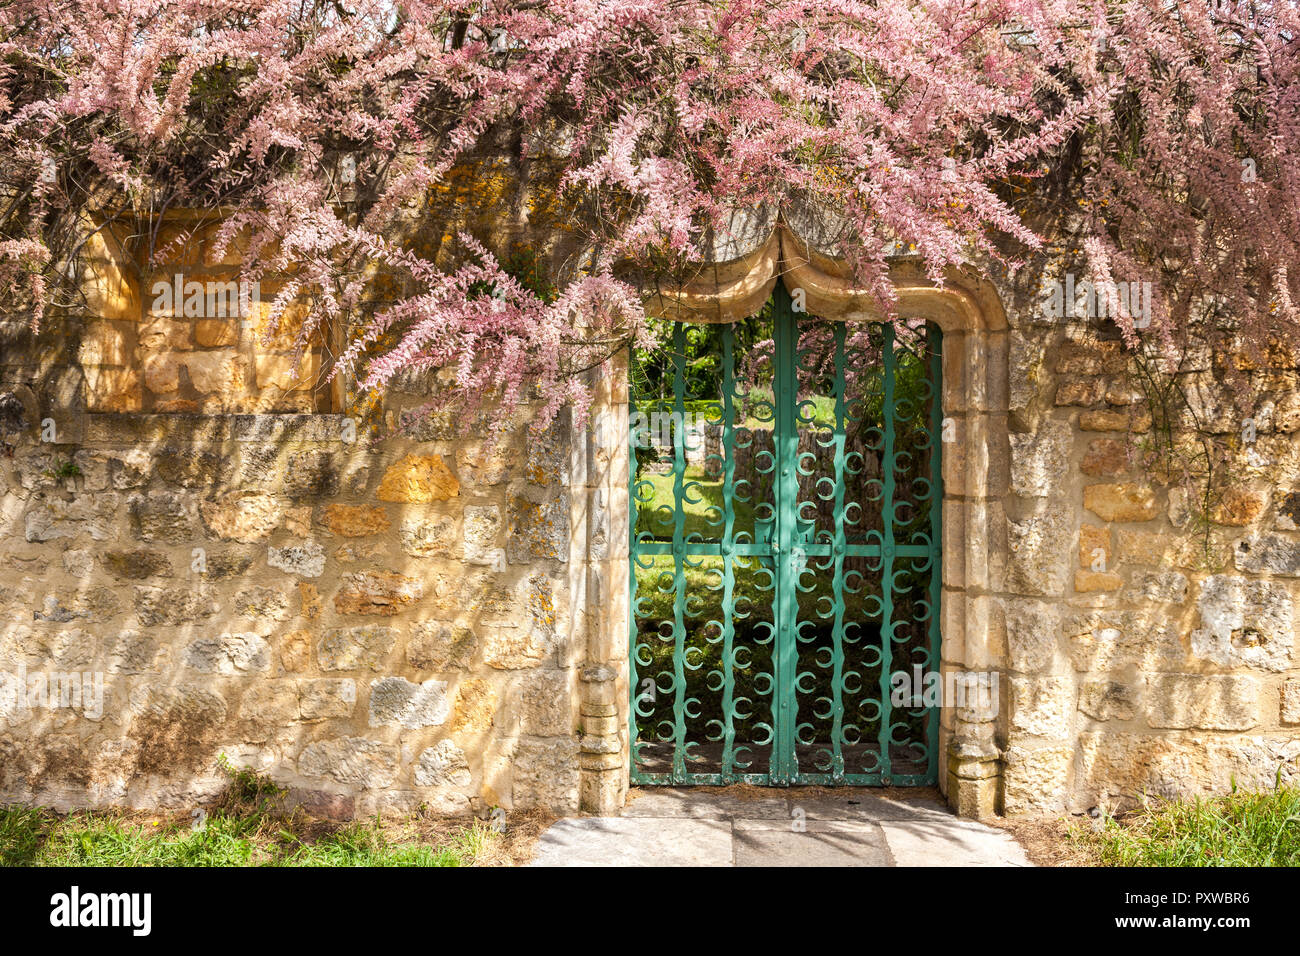 Tamarix impianto in piena fioritura che circonda un verde metal di gate e abbellita da arco in pietra porta e ols muro di pietra Foto Stock